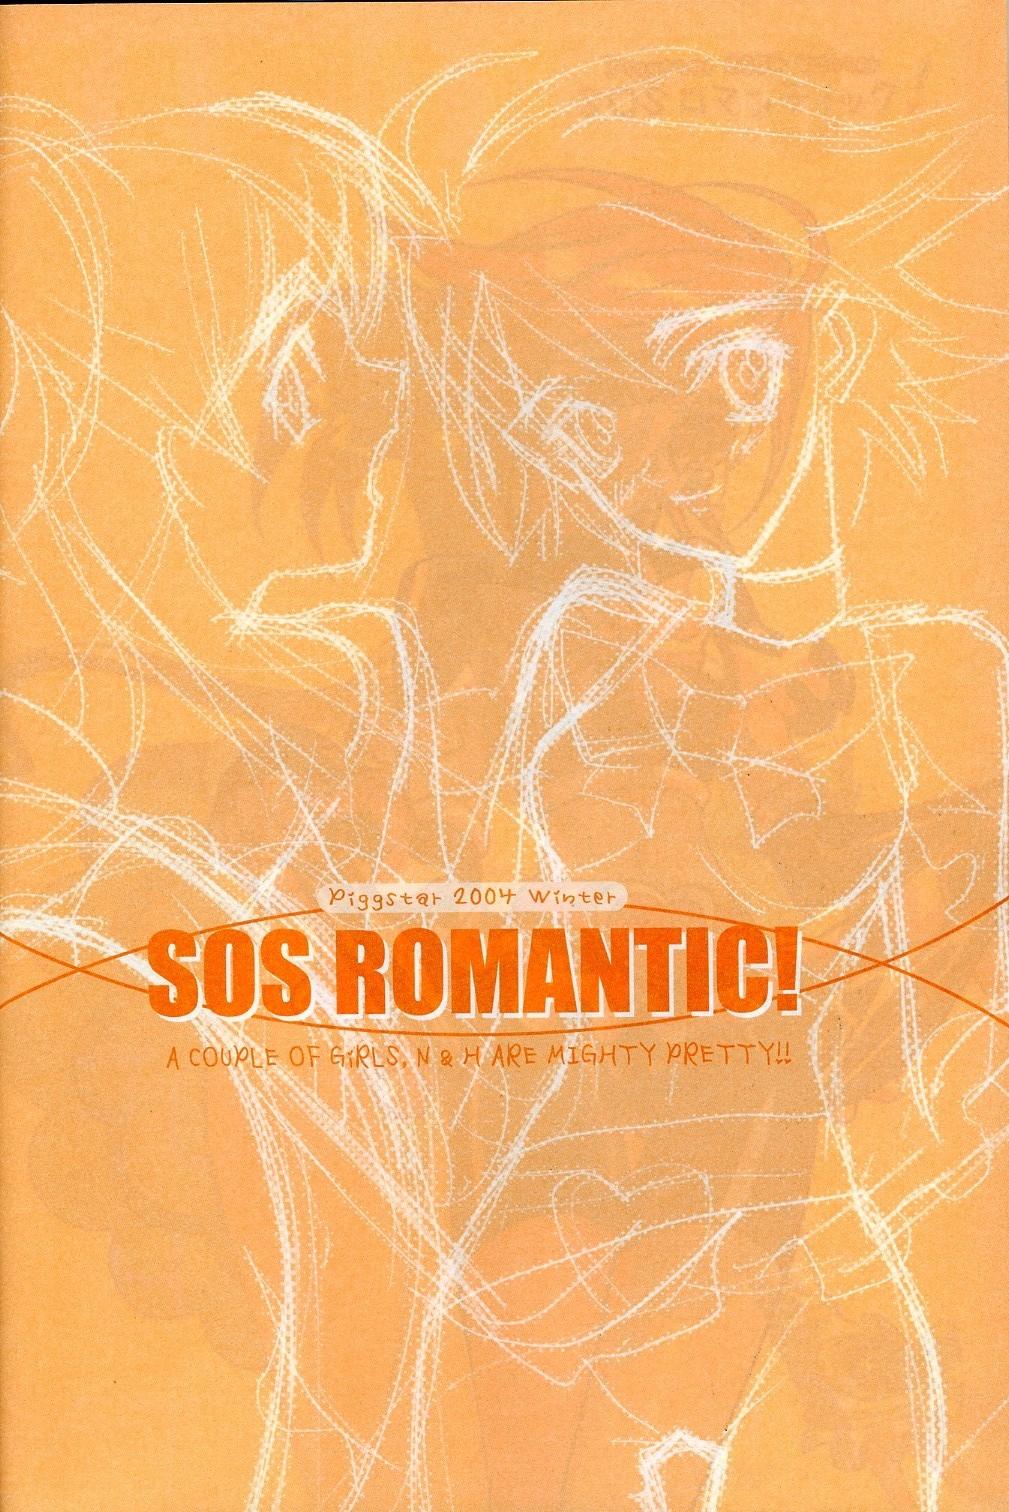 Ssbbw SOS ROMANTIC - Pretty cure Danish - Page 5